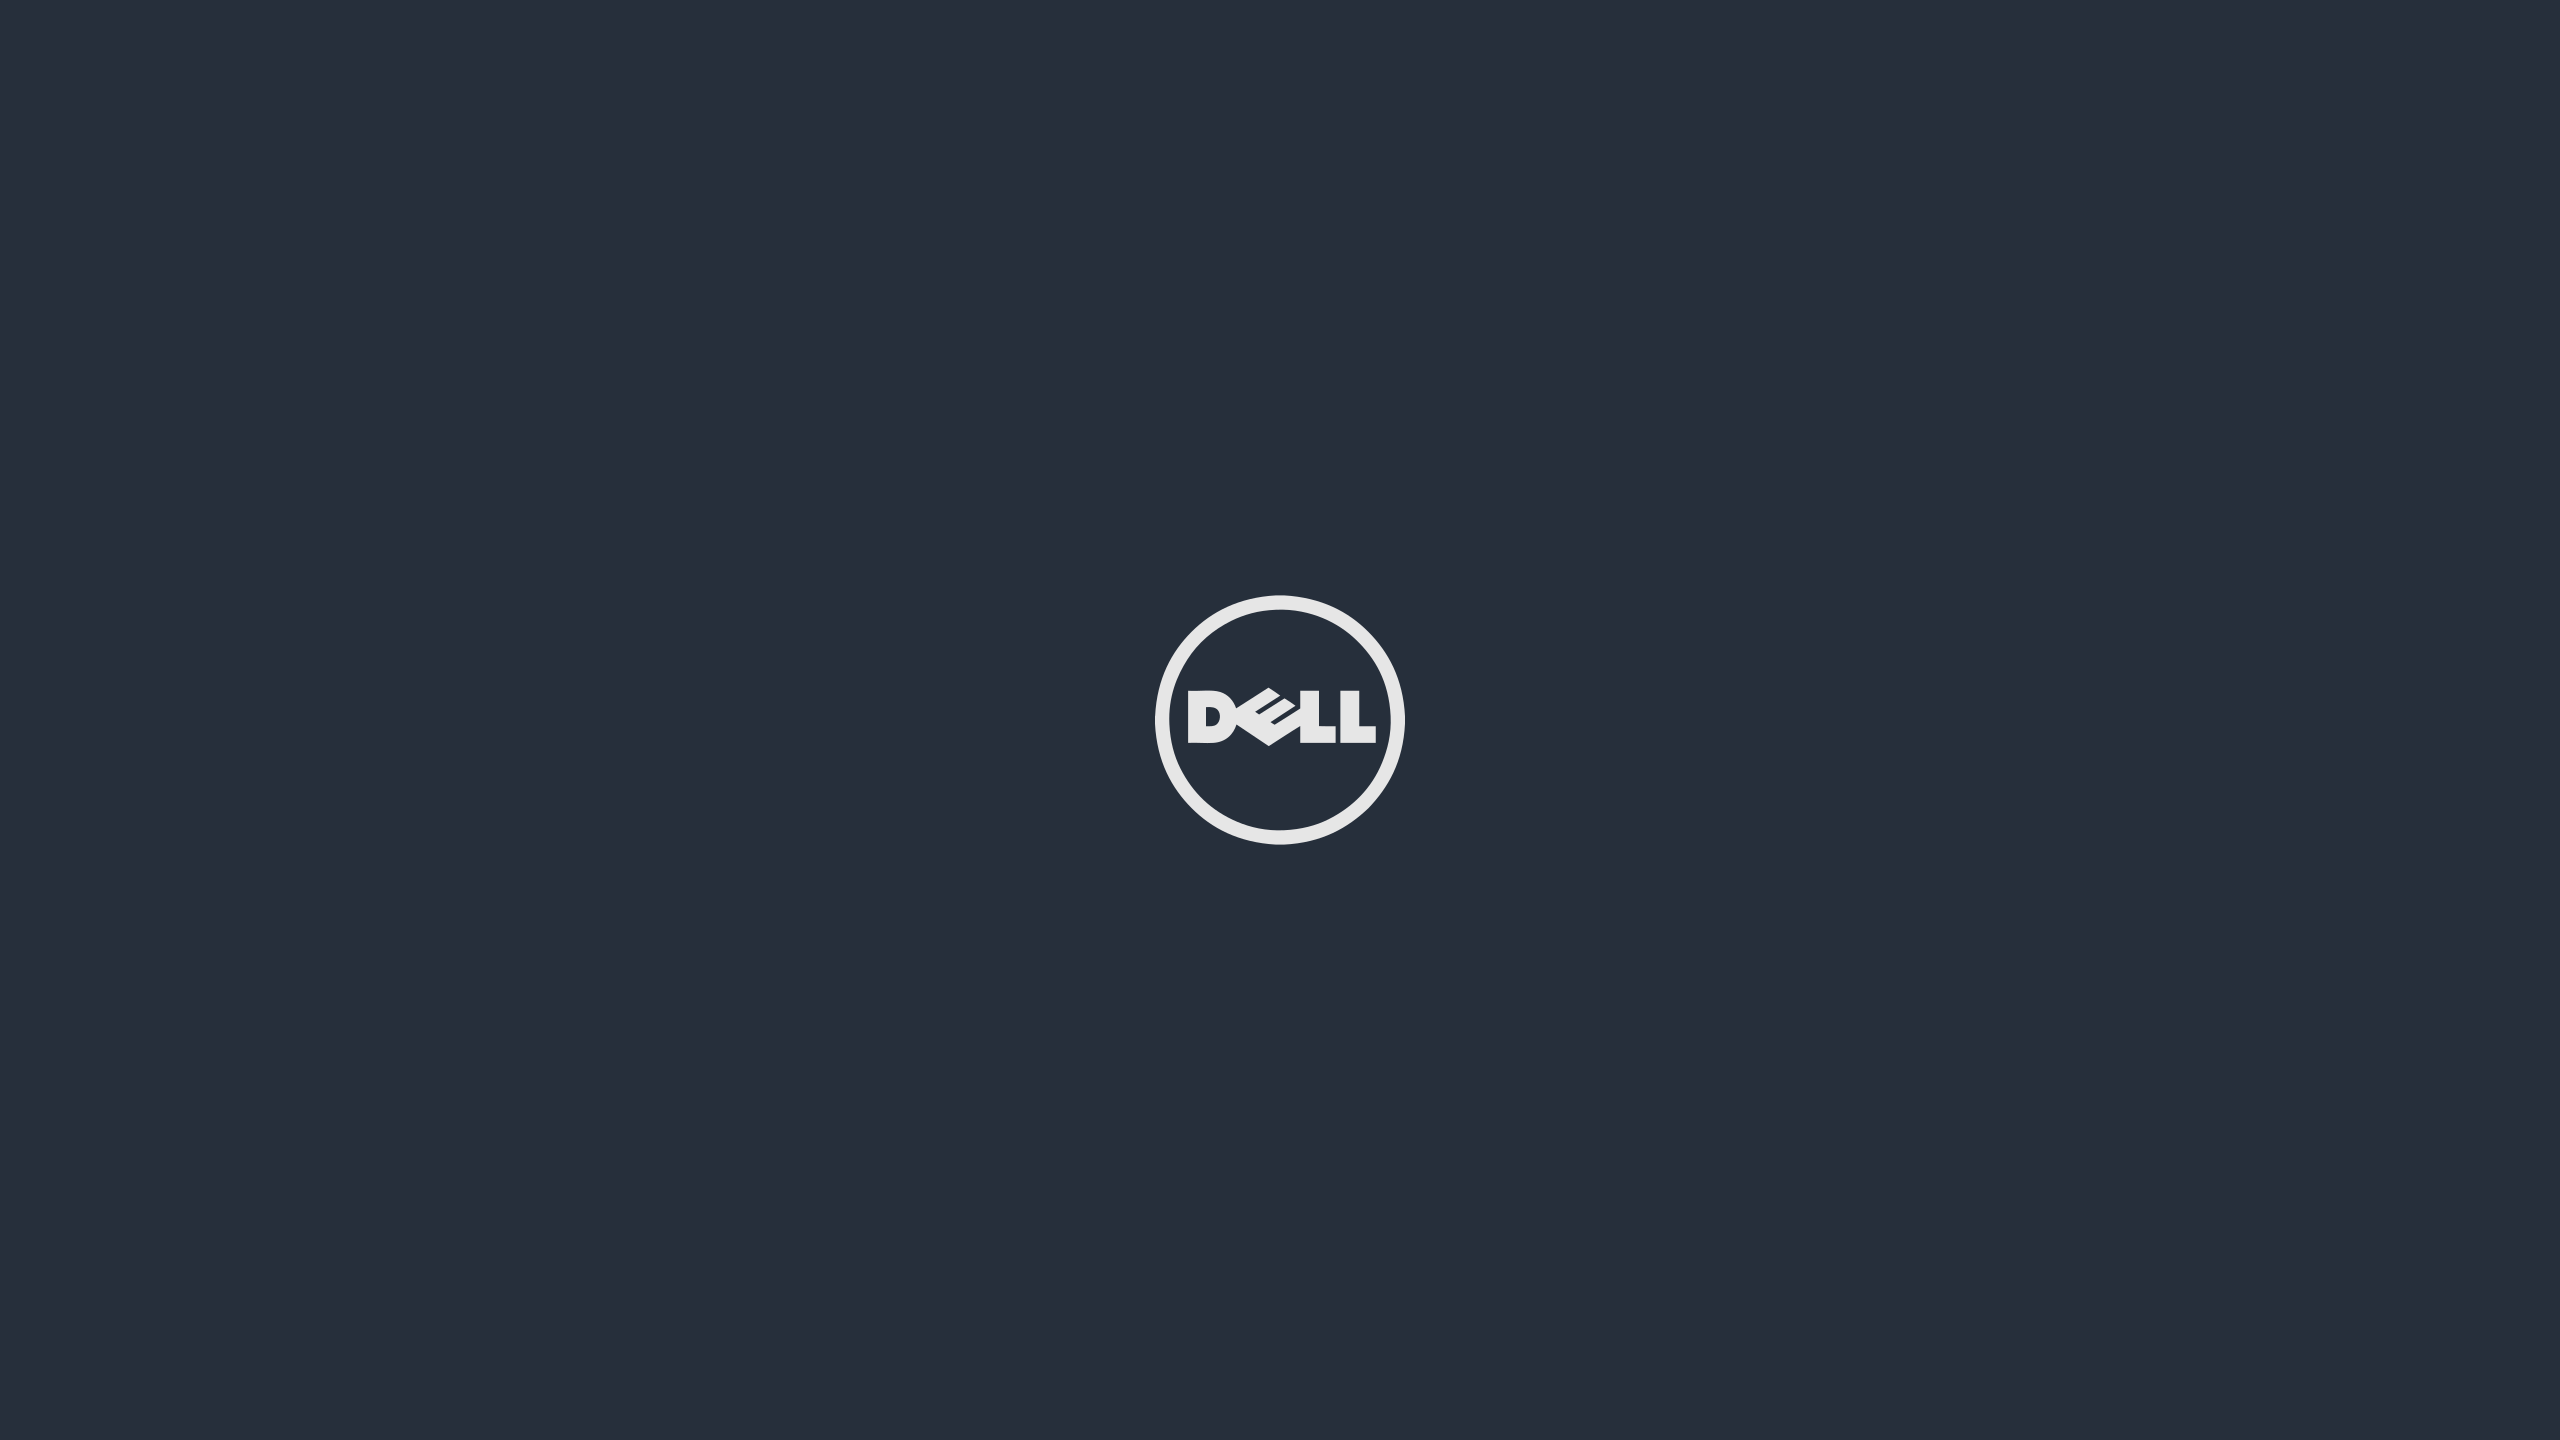 Fondos de pantalla: minimalismo, texto, logotipo, círculo, marca, Dell, marcas